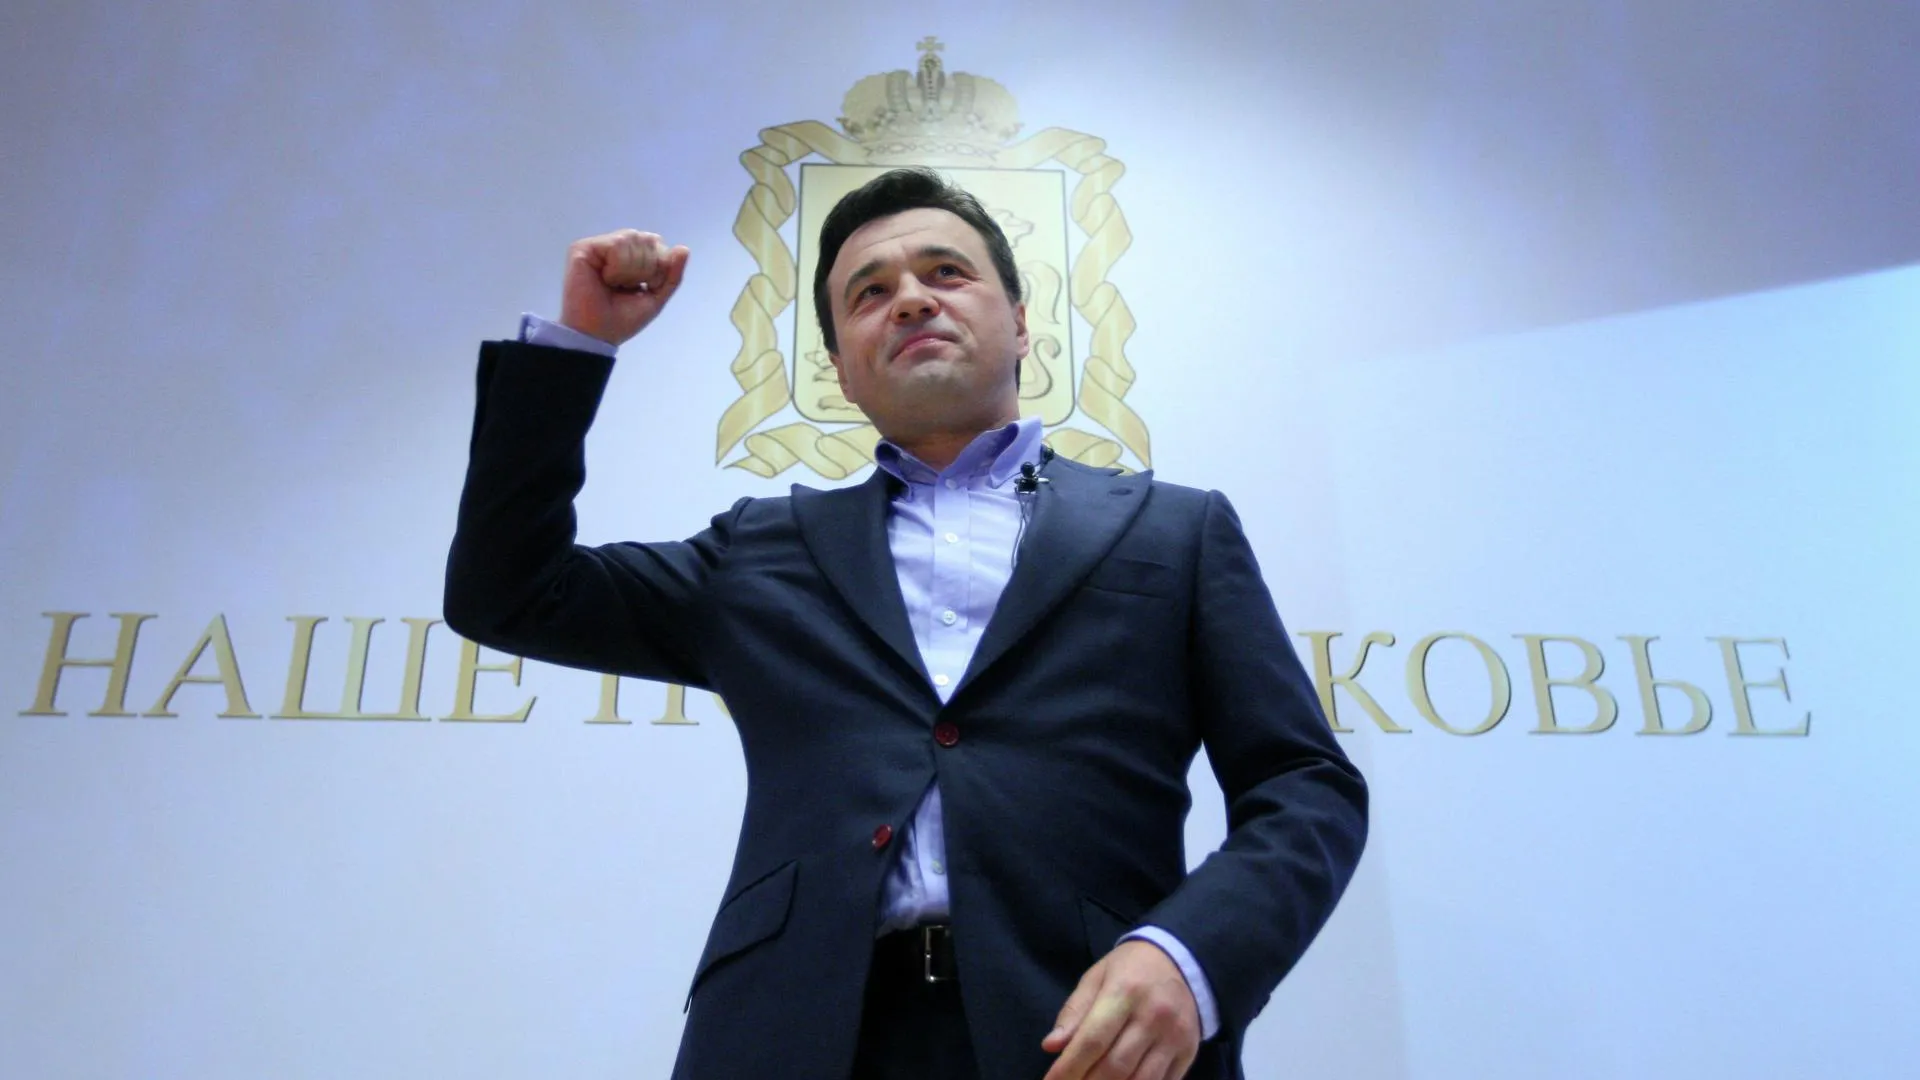 Воробьев набирает на выборах 79,05% по итогам обработки 99% бюллетеней